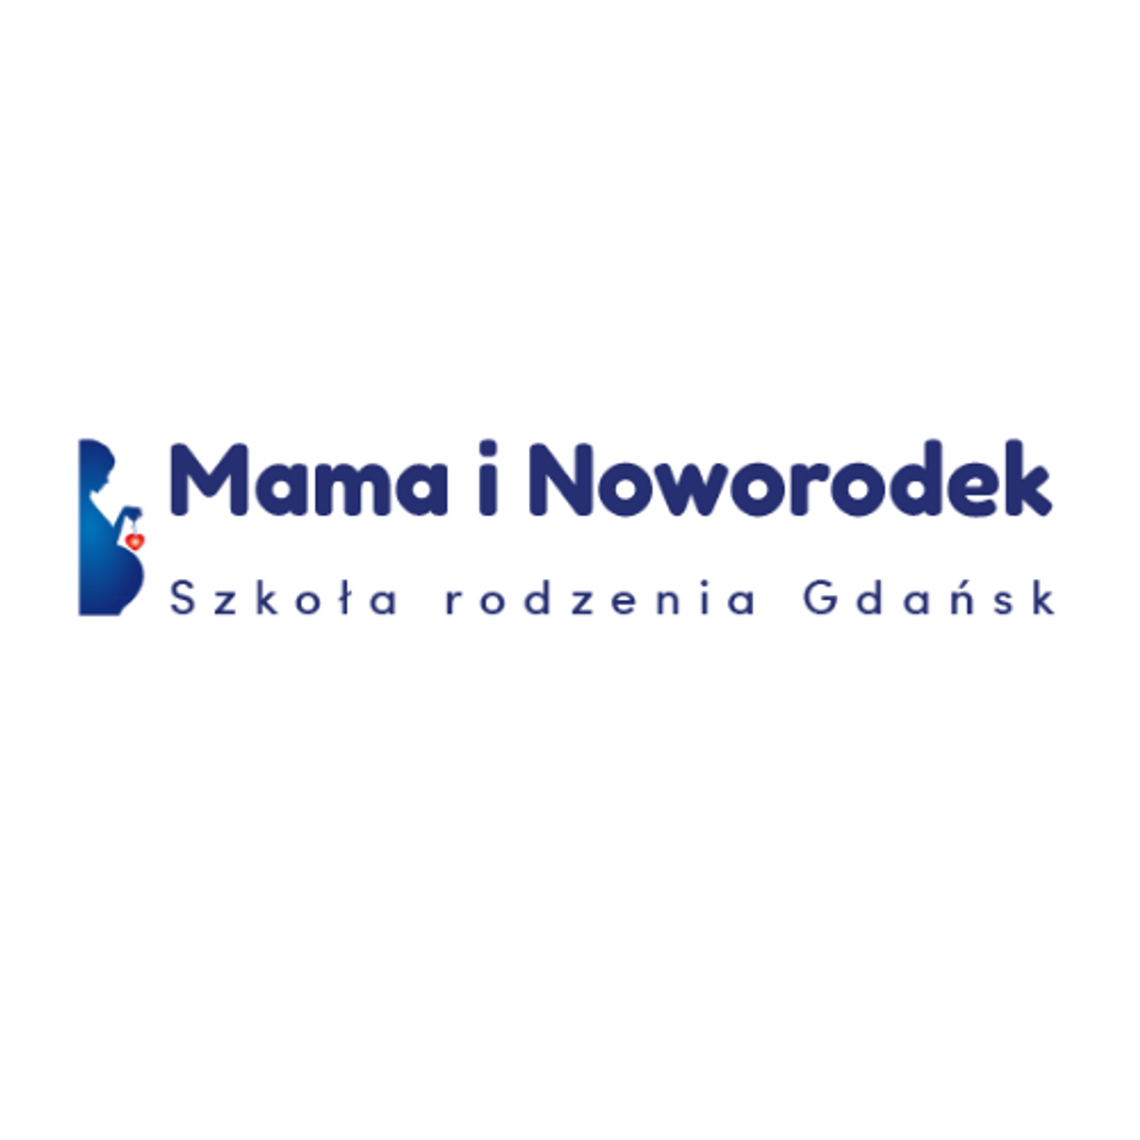  Szkoła Rodzenia w Gdańsku „Mama i Noworodek"